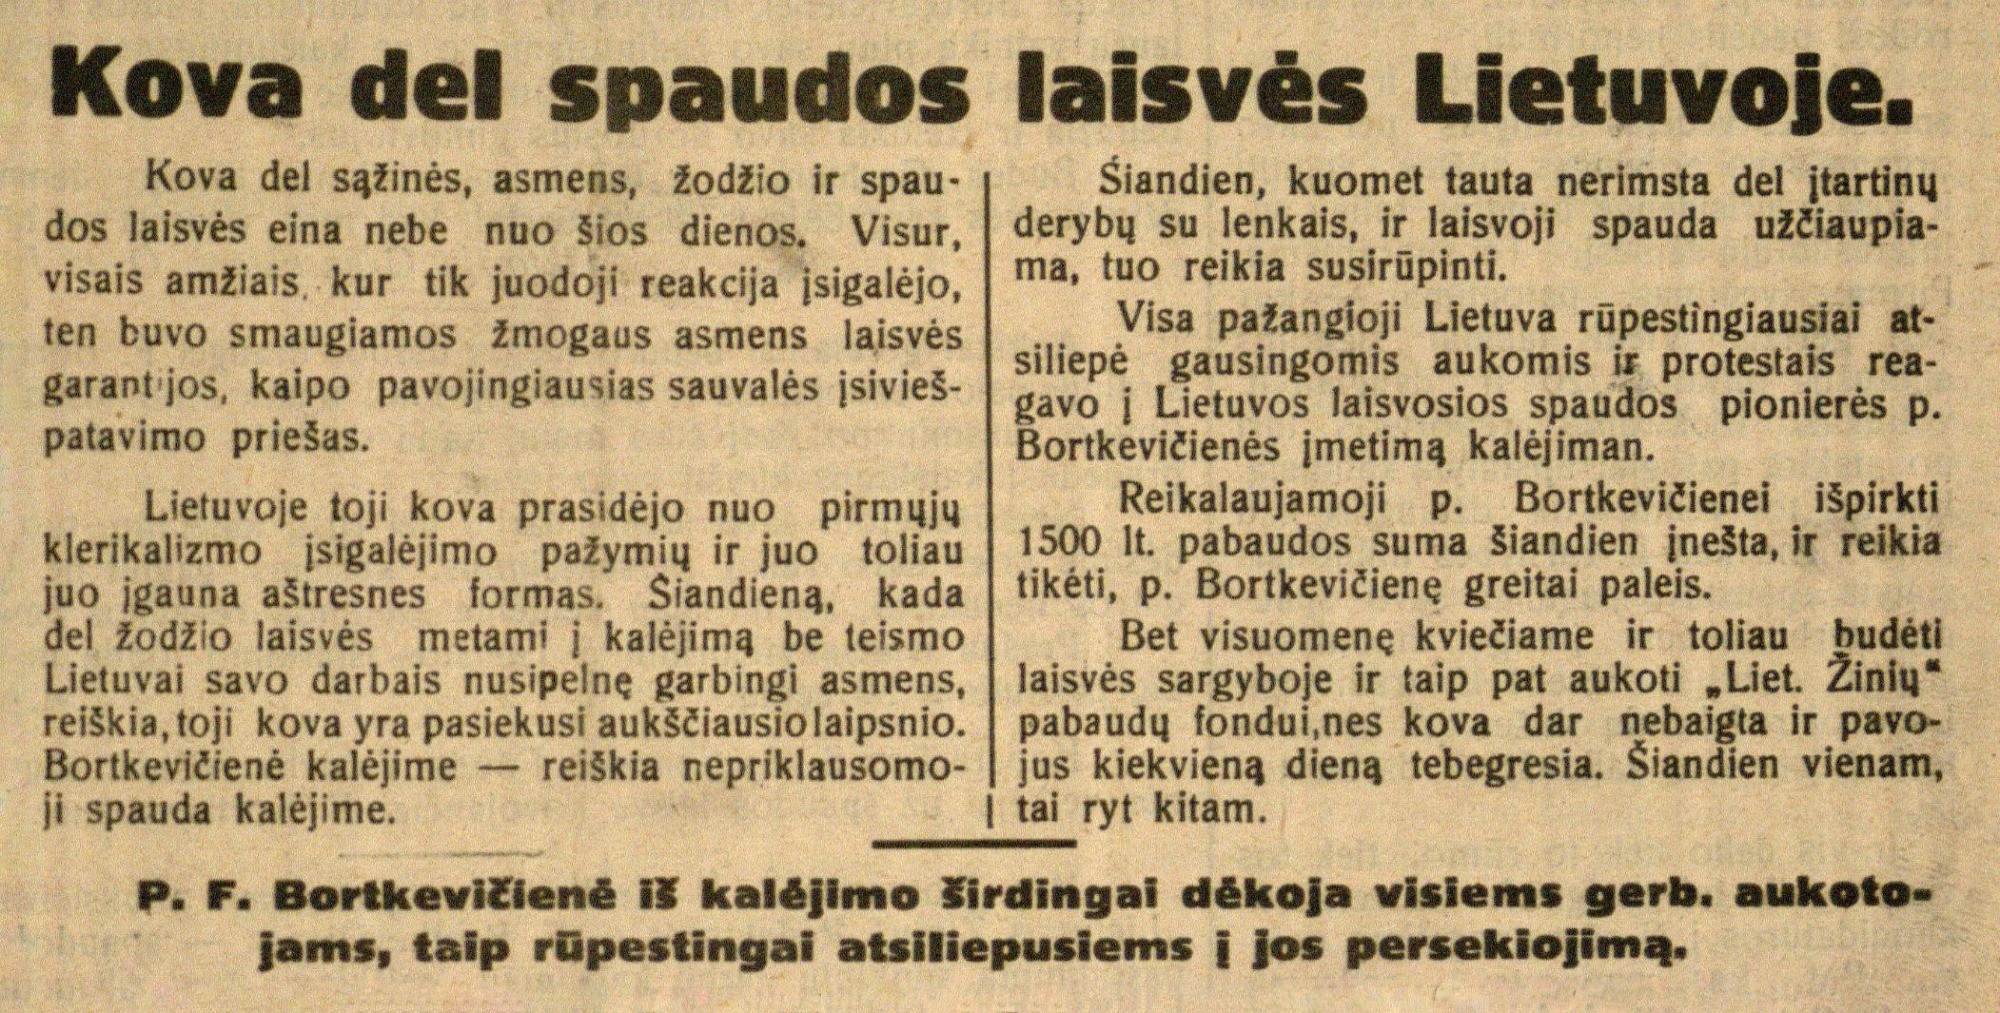 Kova dėl spaudos laisvės Lietuvoje: [Dėl F. Bortkevičienės paleidimo iš kalėjimo]